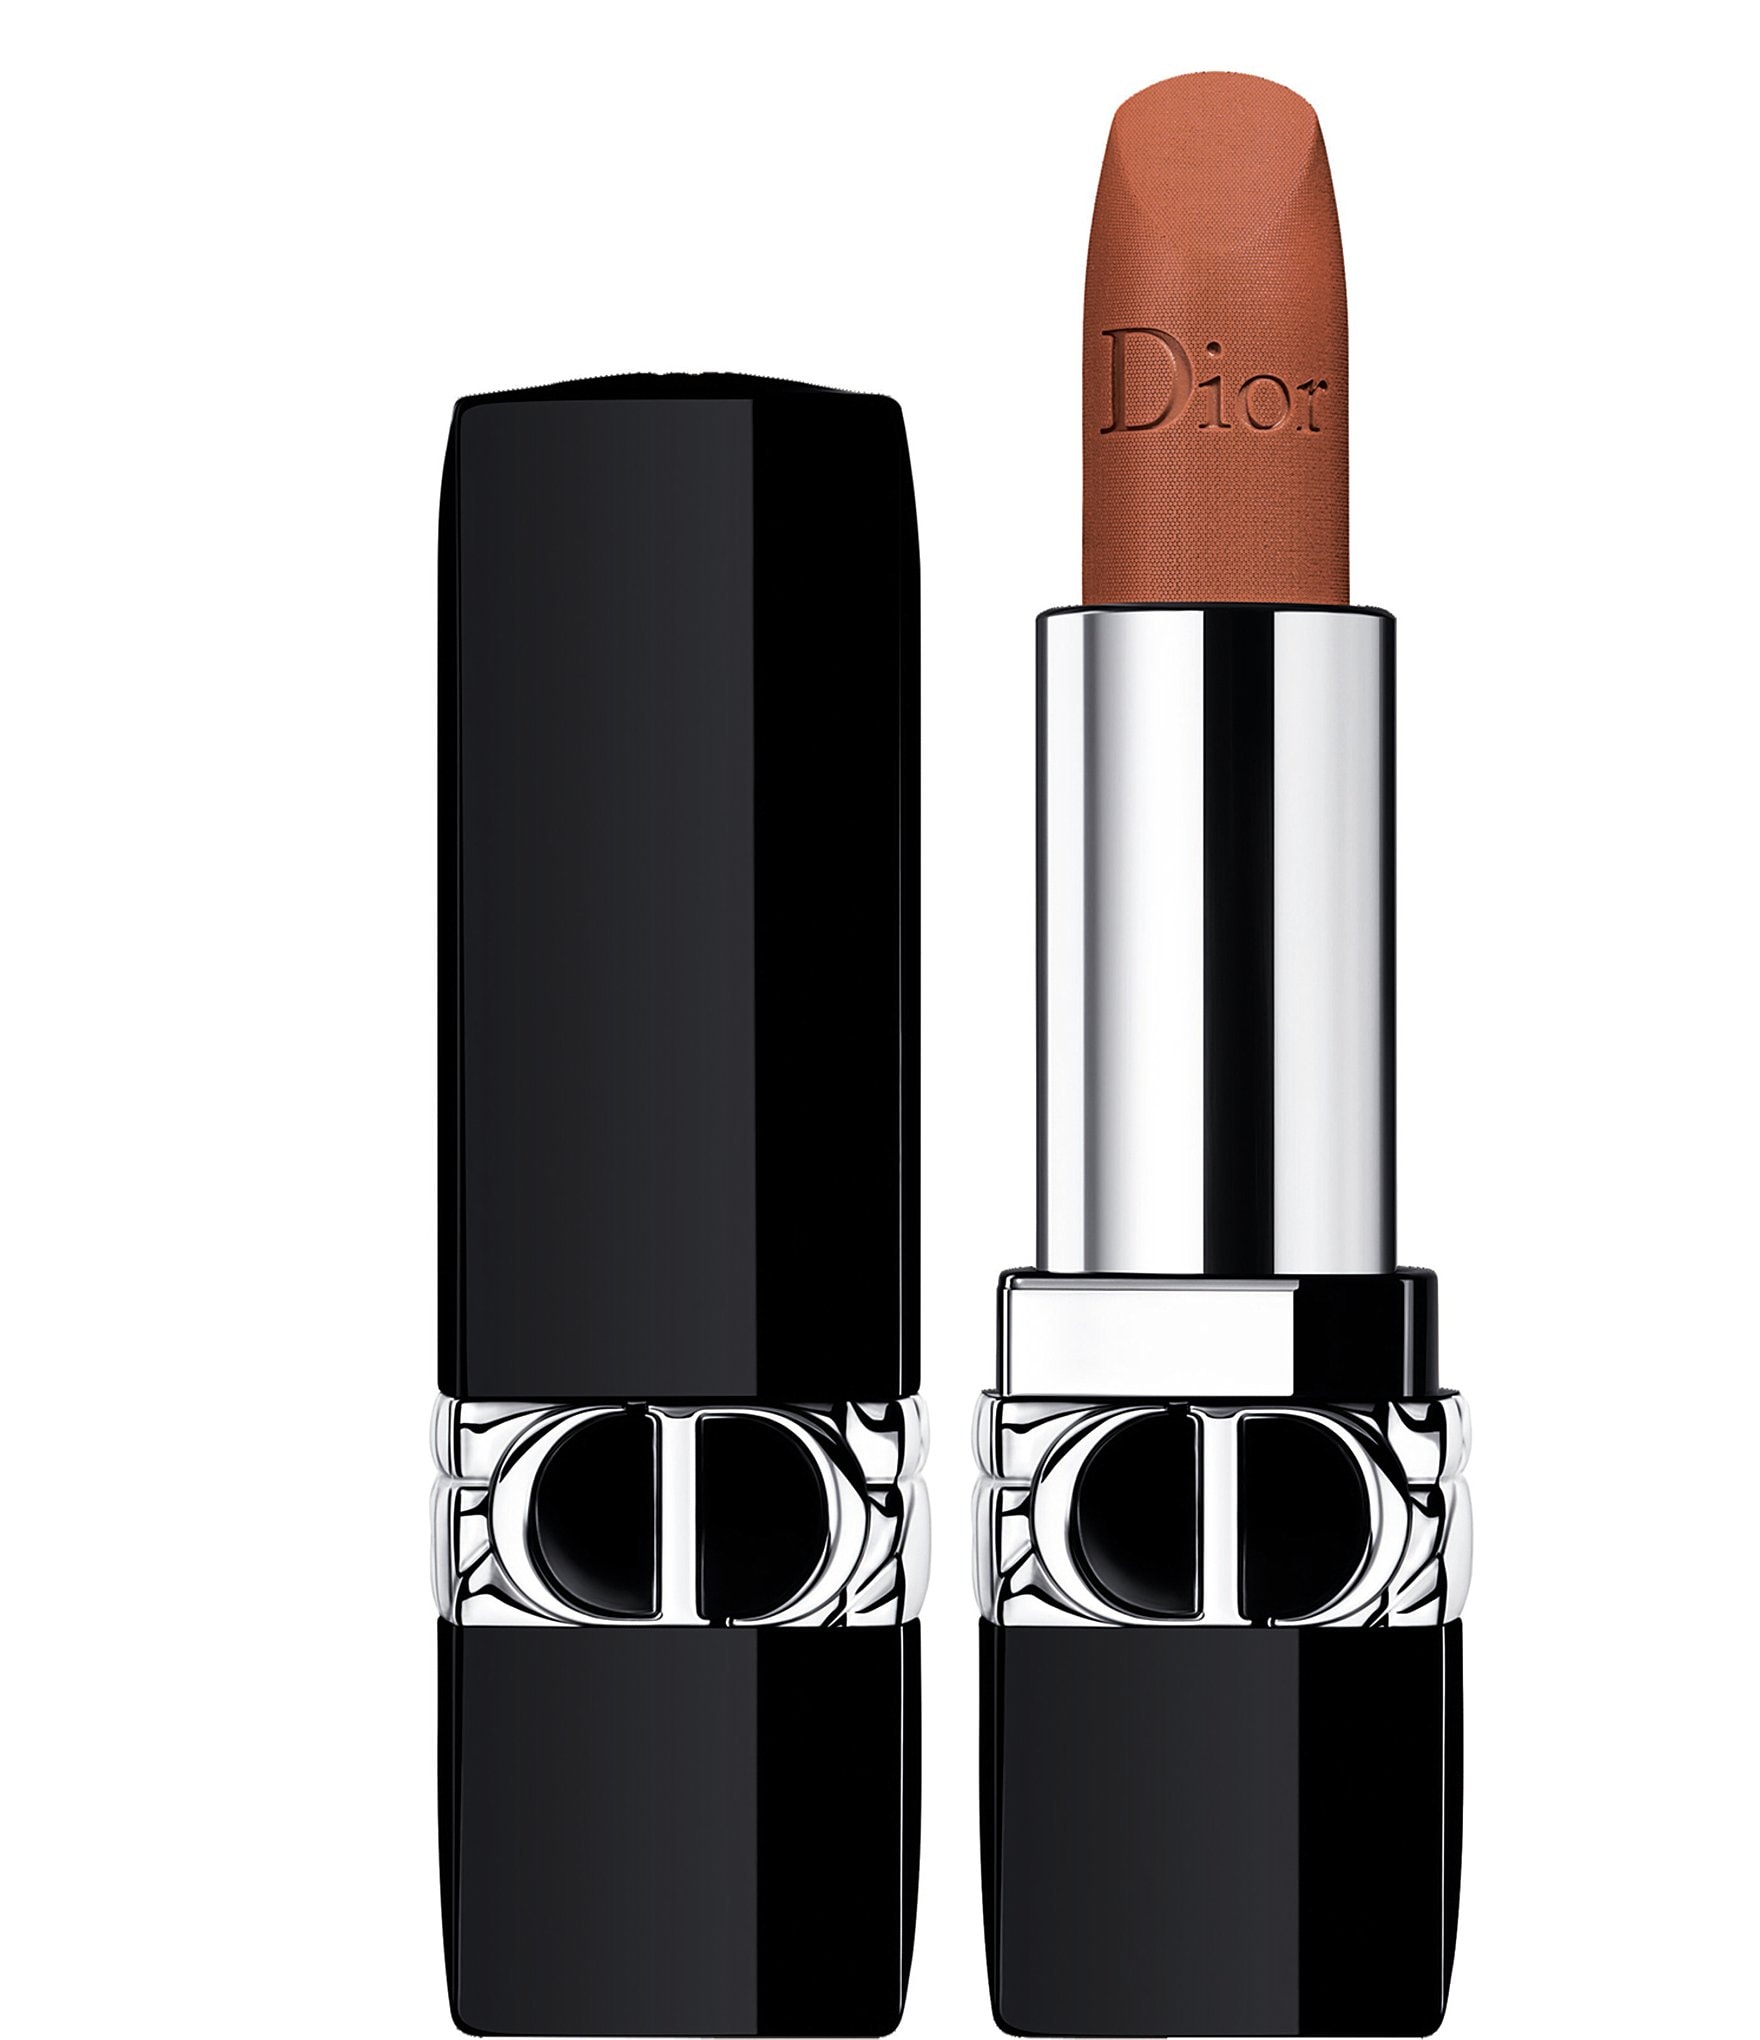 Geaccepteerd beheerder Dood in de wereld Dior Rouge Dior Refillable Lipstick - Velvet | Dillard's